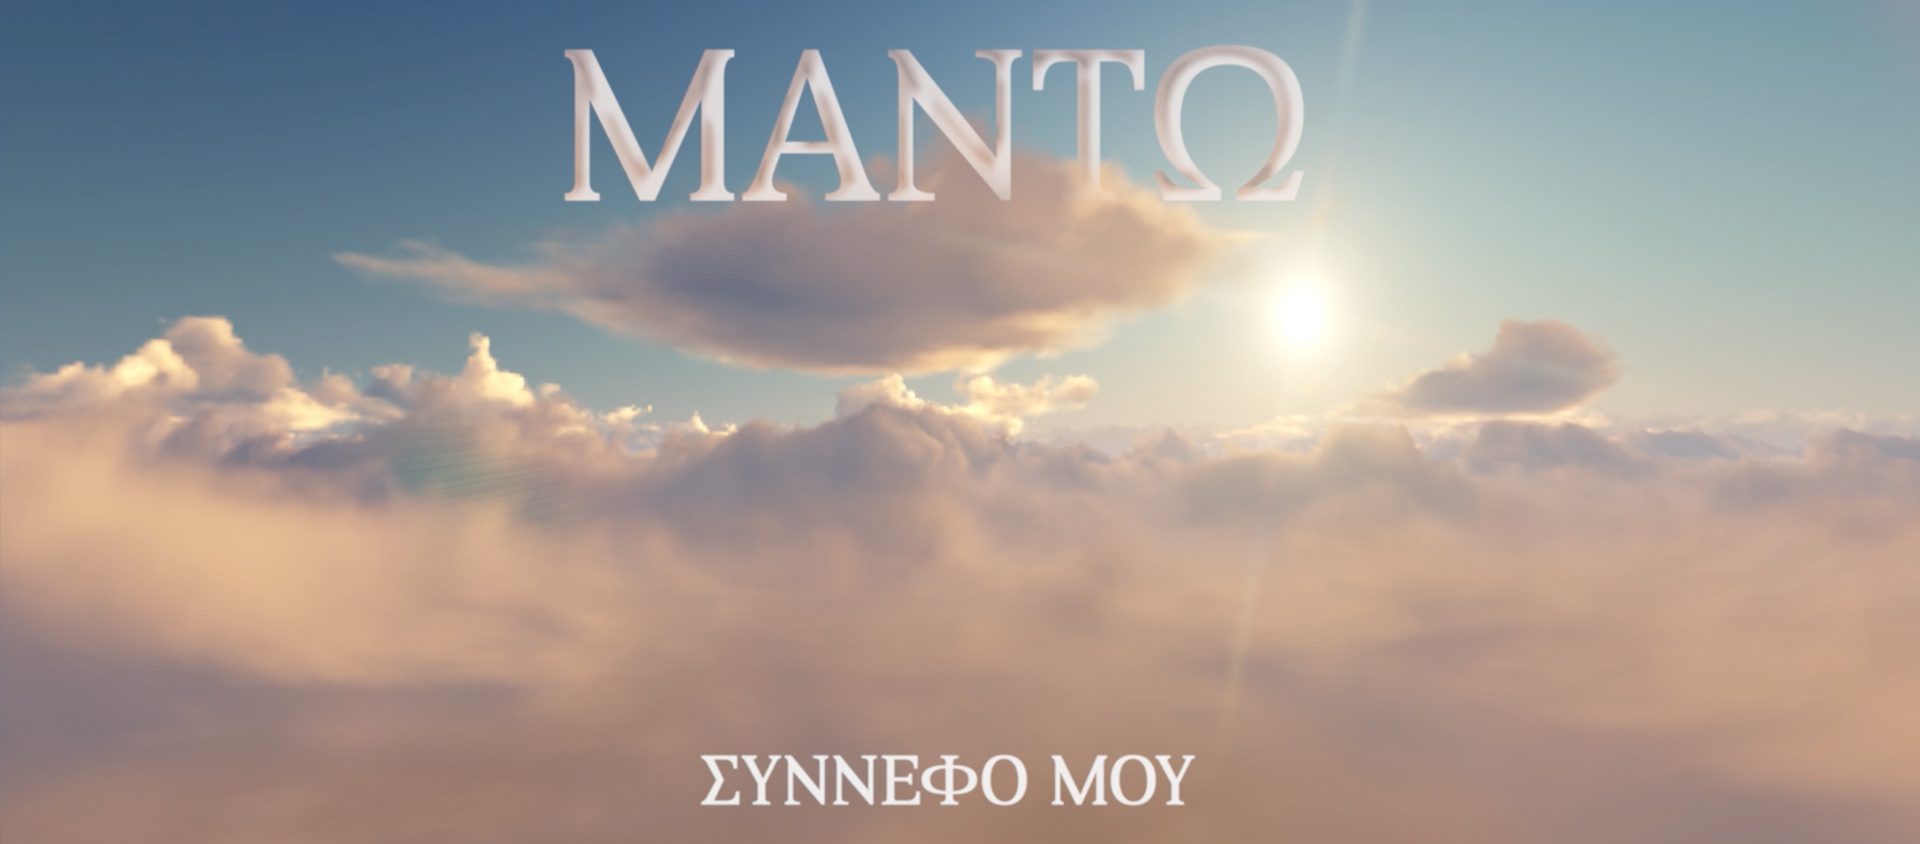 Μαντώ: «Σύννεφό Μου» – Νέο single από το album «Βραδινές Διαδρομές» (video)